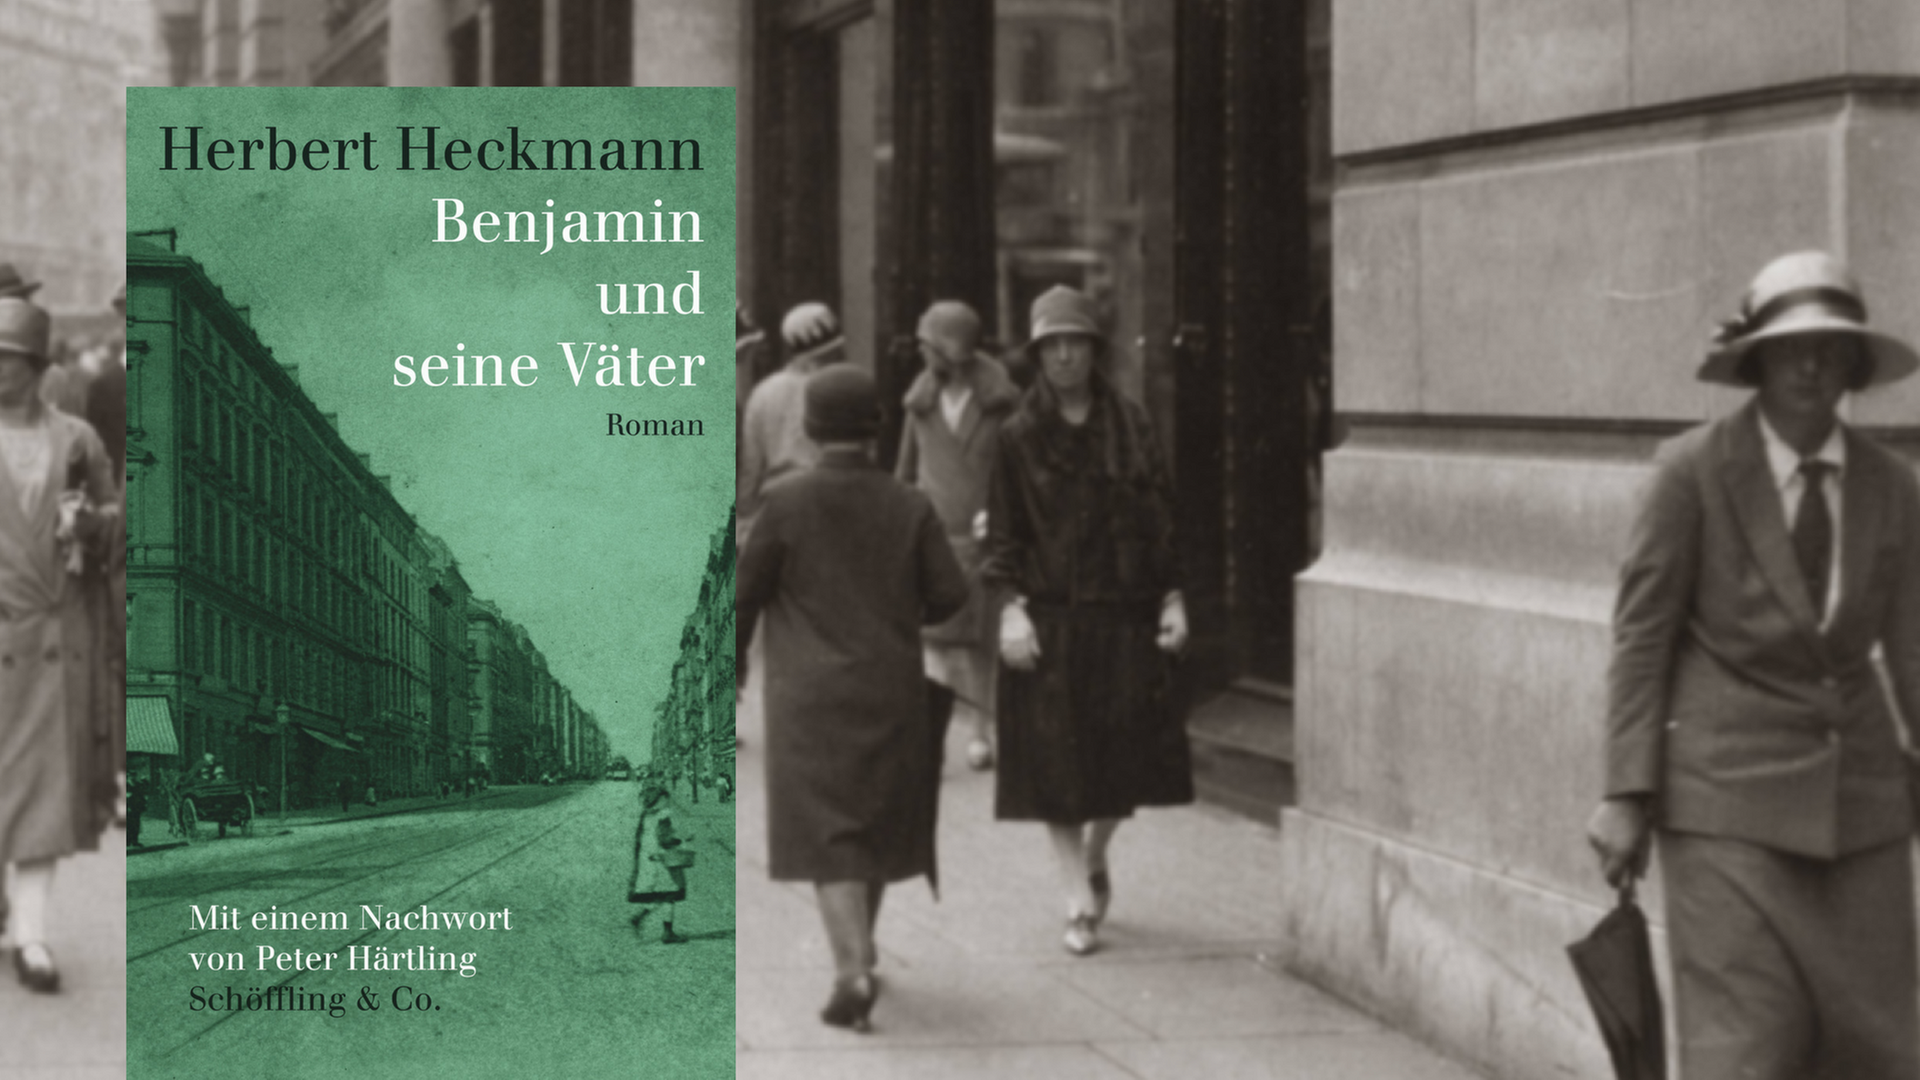 Herbert Heckmann: "Benjamin und seine Väter". Im Hintergrund: eine Straßenszene in den 20er-Jahren.